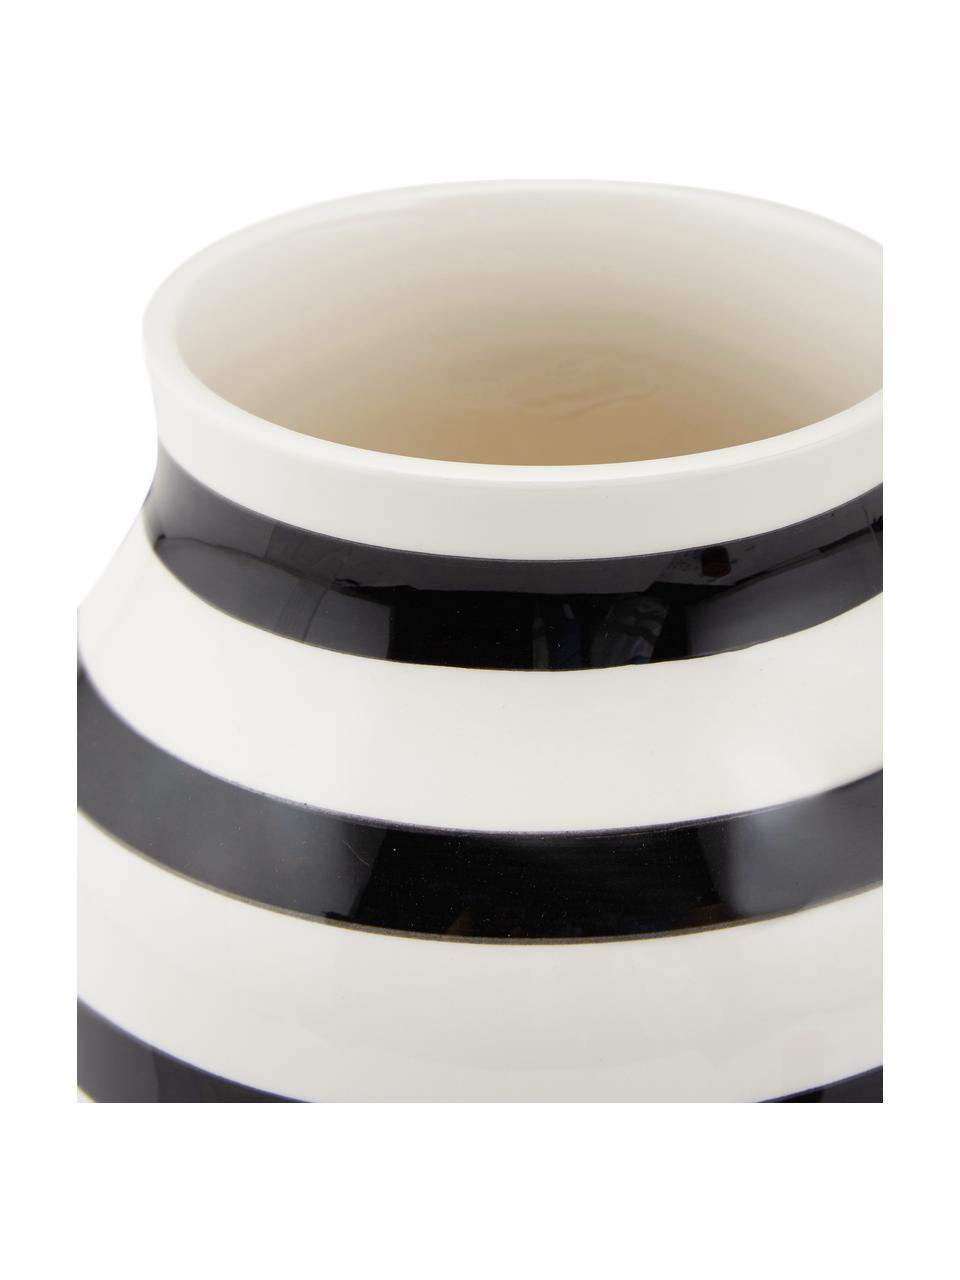 Handgefertigte Design-Vase Omaggio, medium, Keramik, Schwarz, Weiß, Ø 17 x H 20 cm